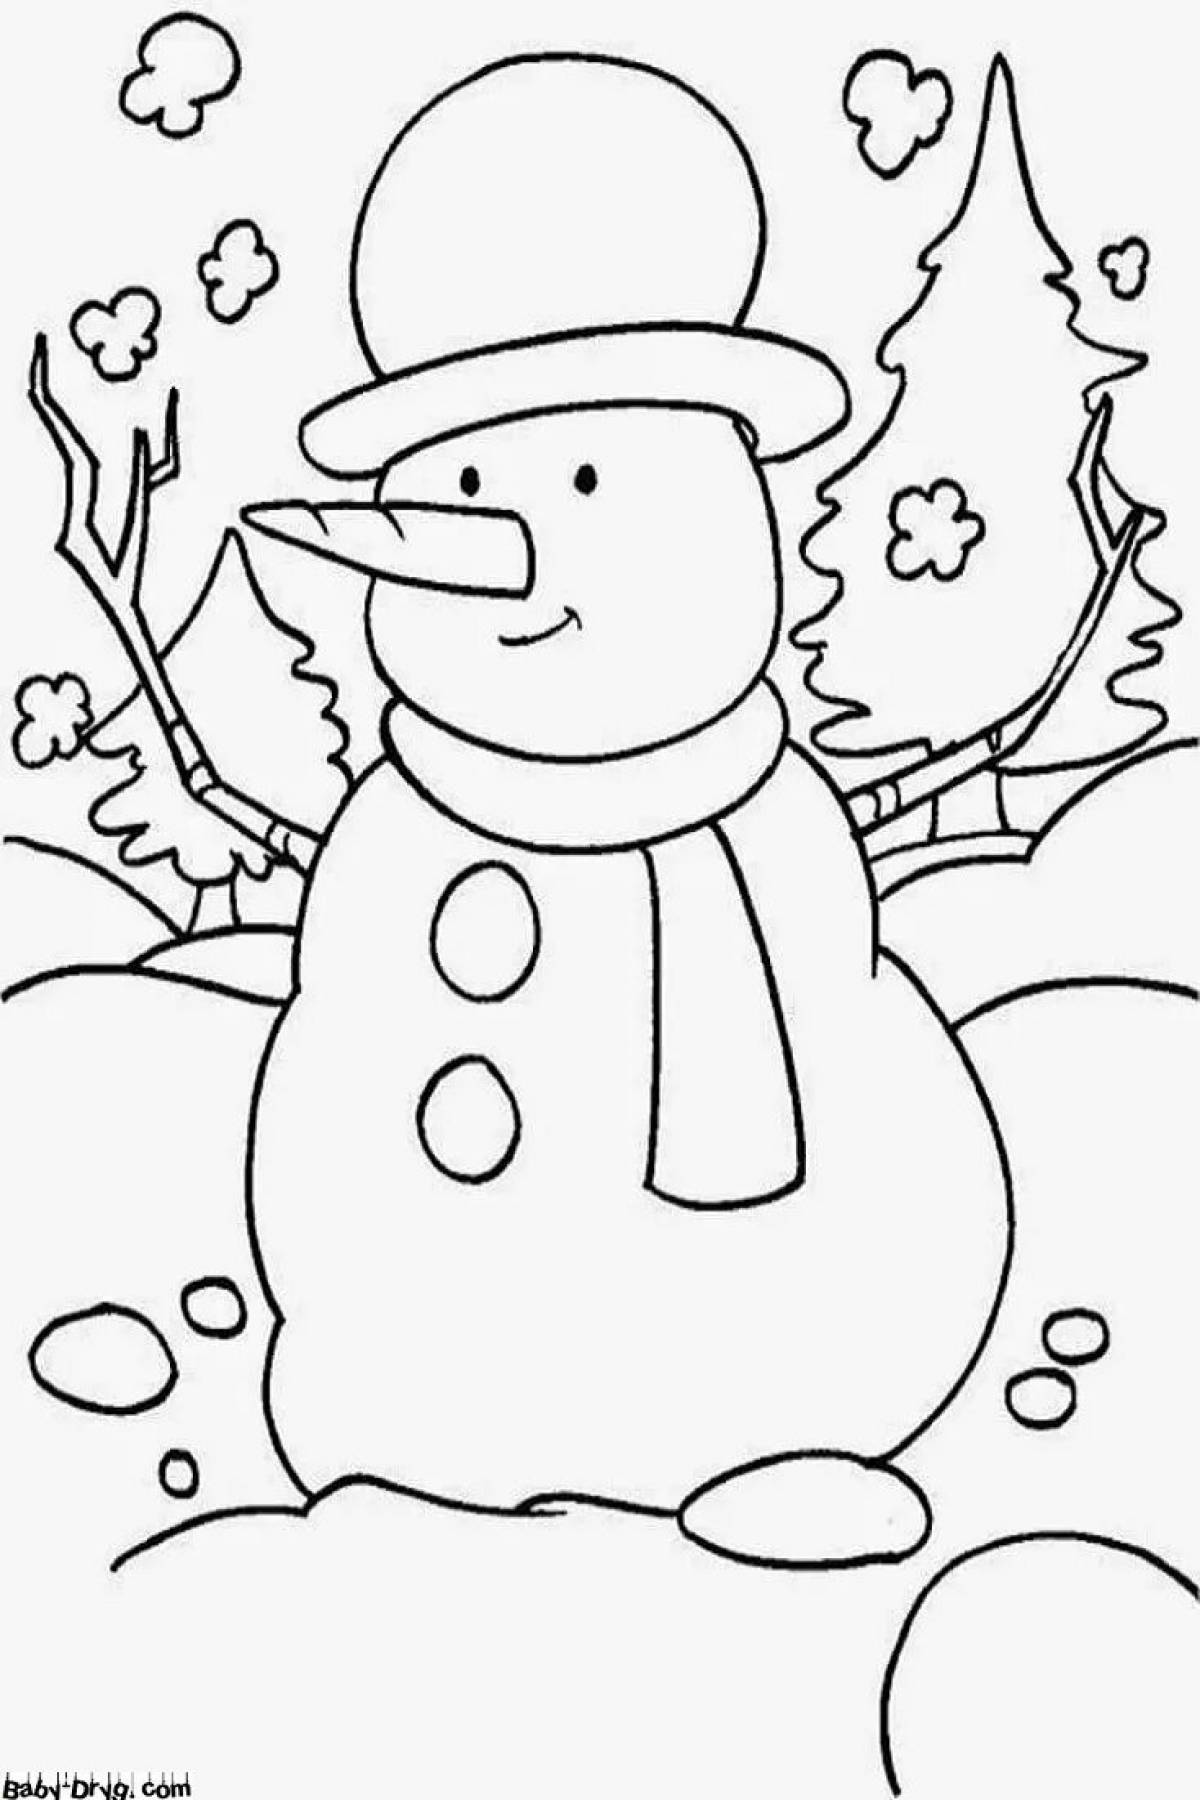 Творческая раскраска снеговик для детей 5 6